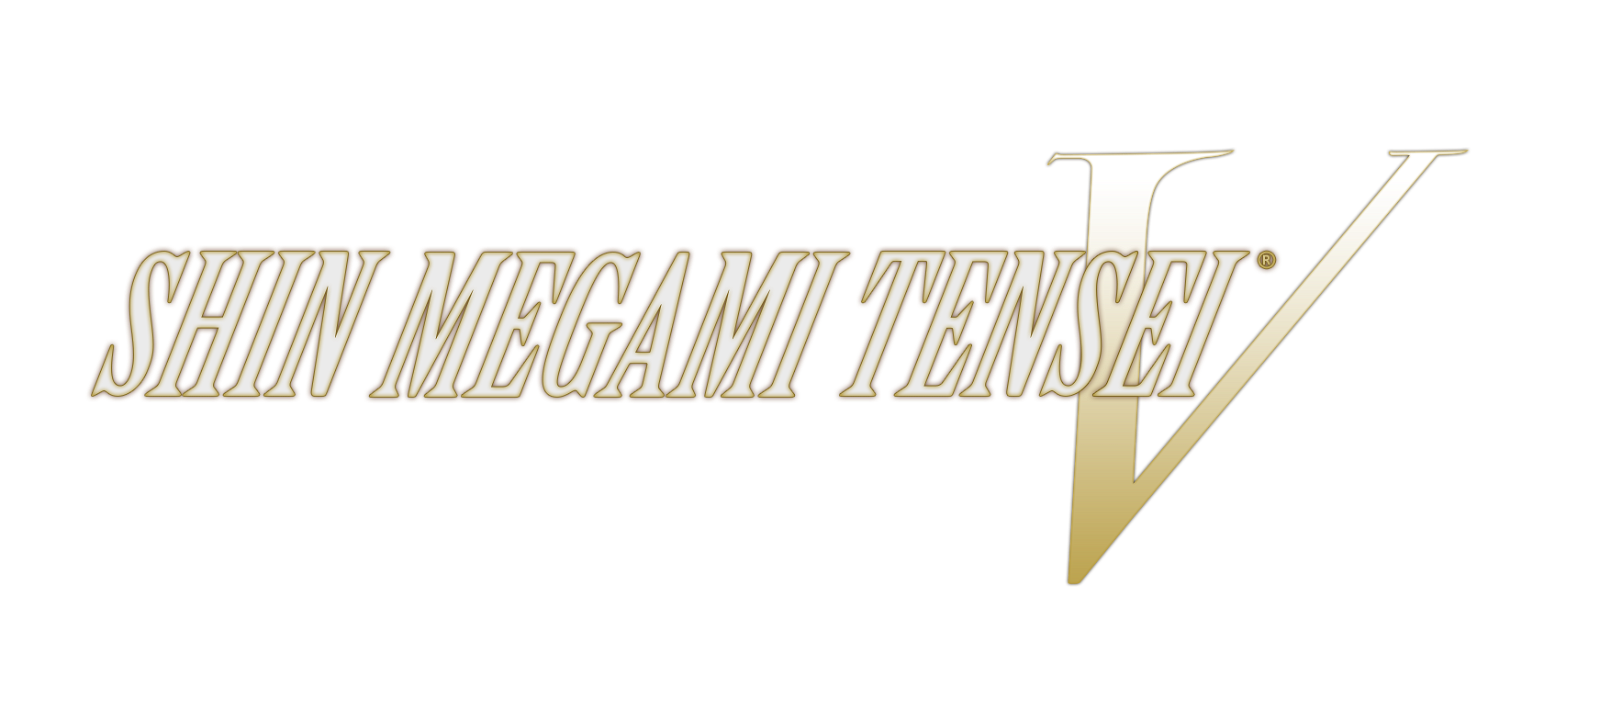 Image of Shin Megami Tensei V